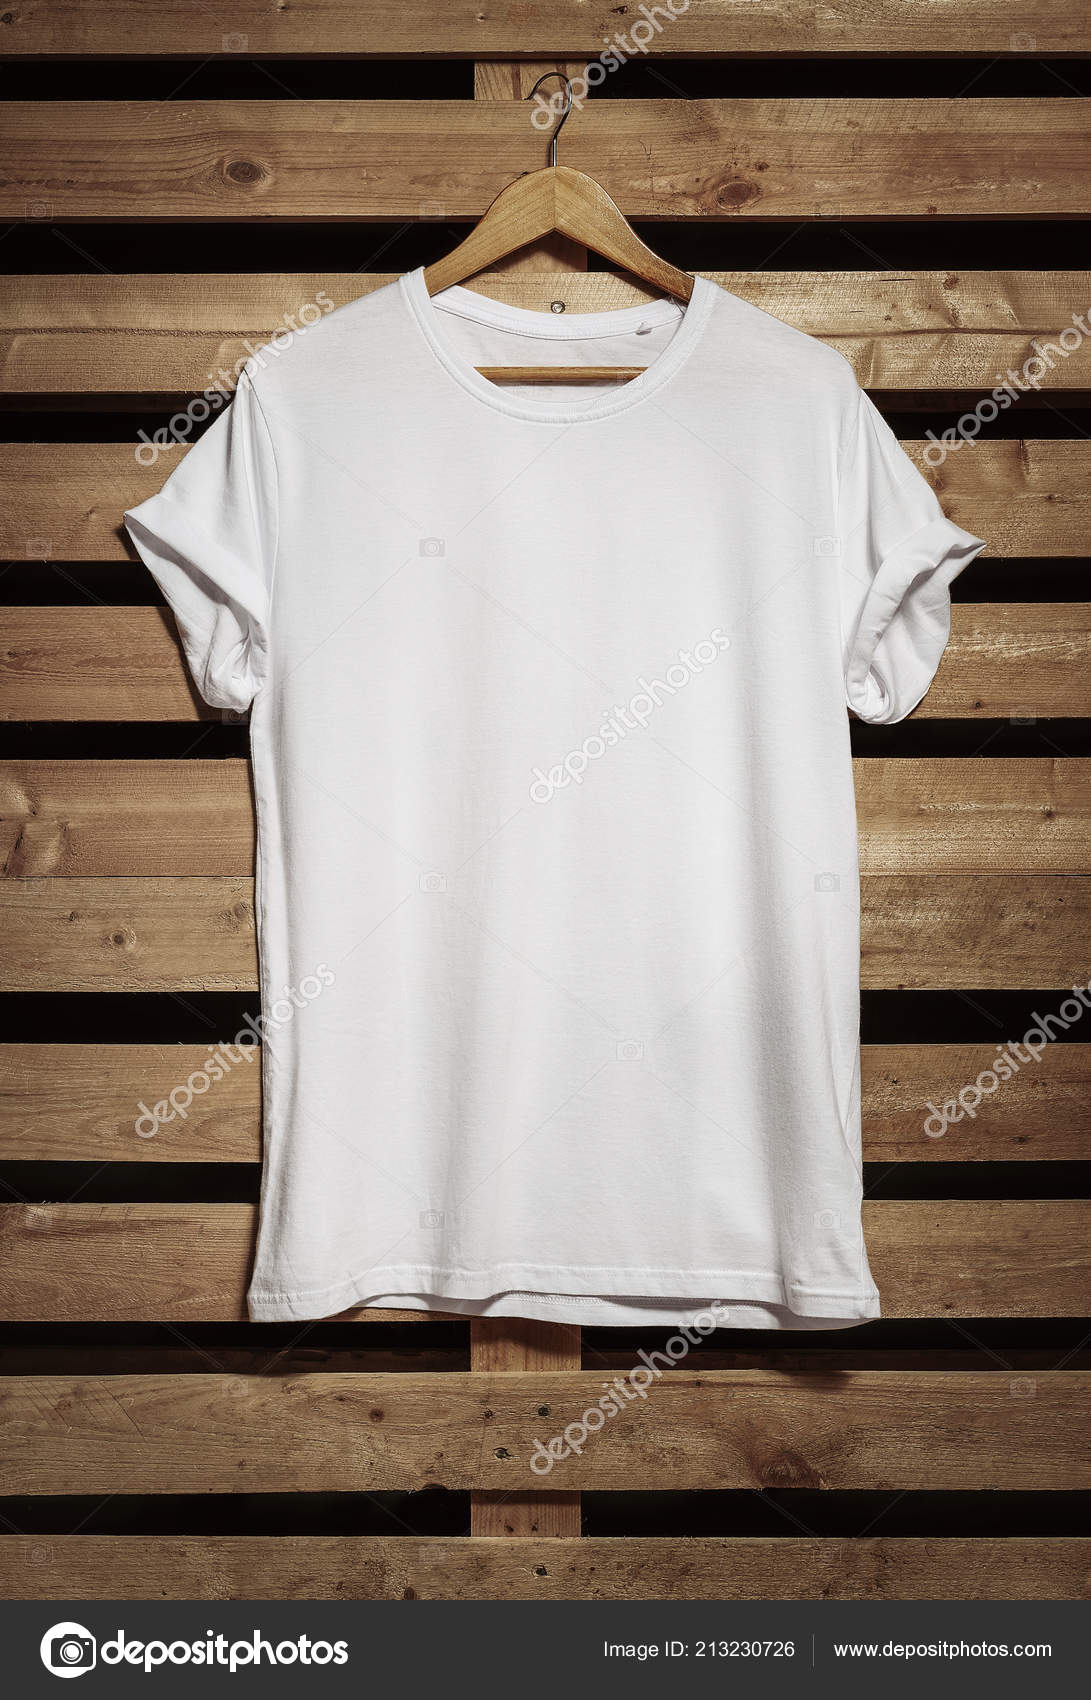 white t shirt hanging